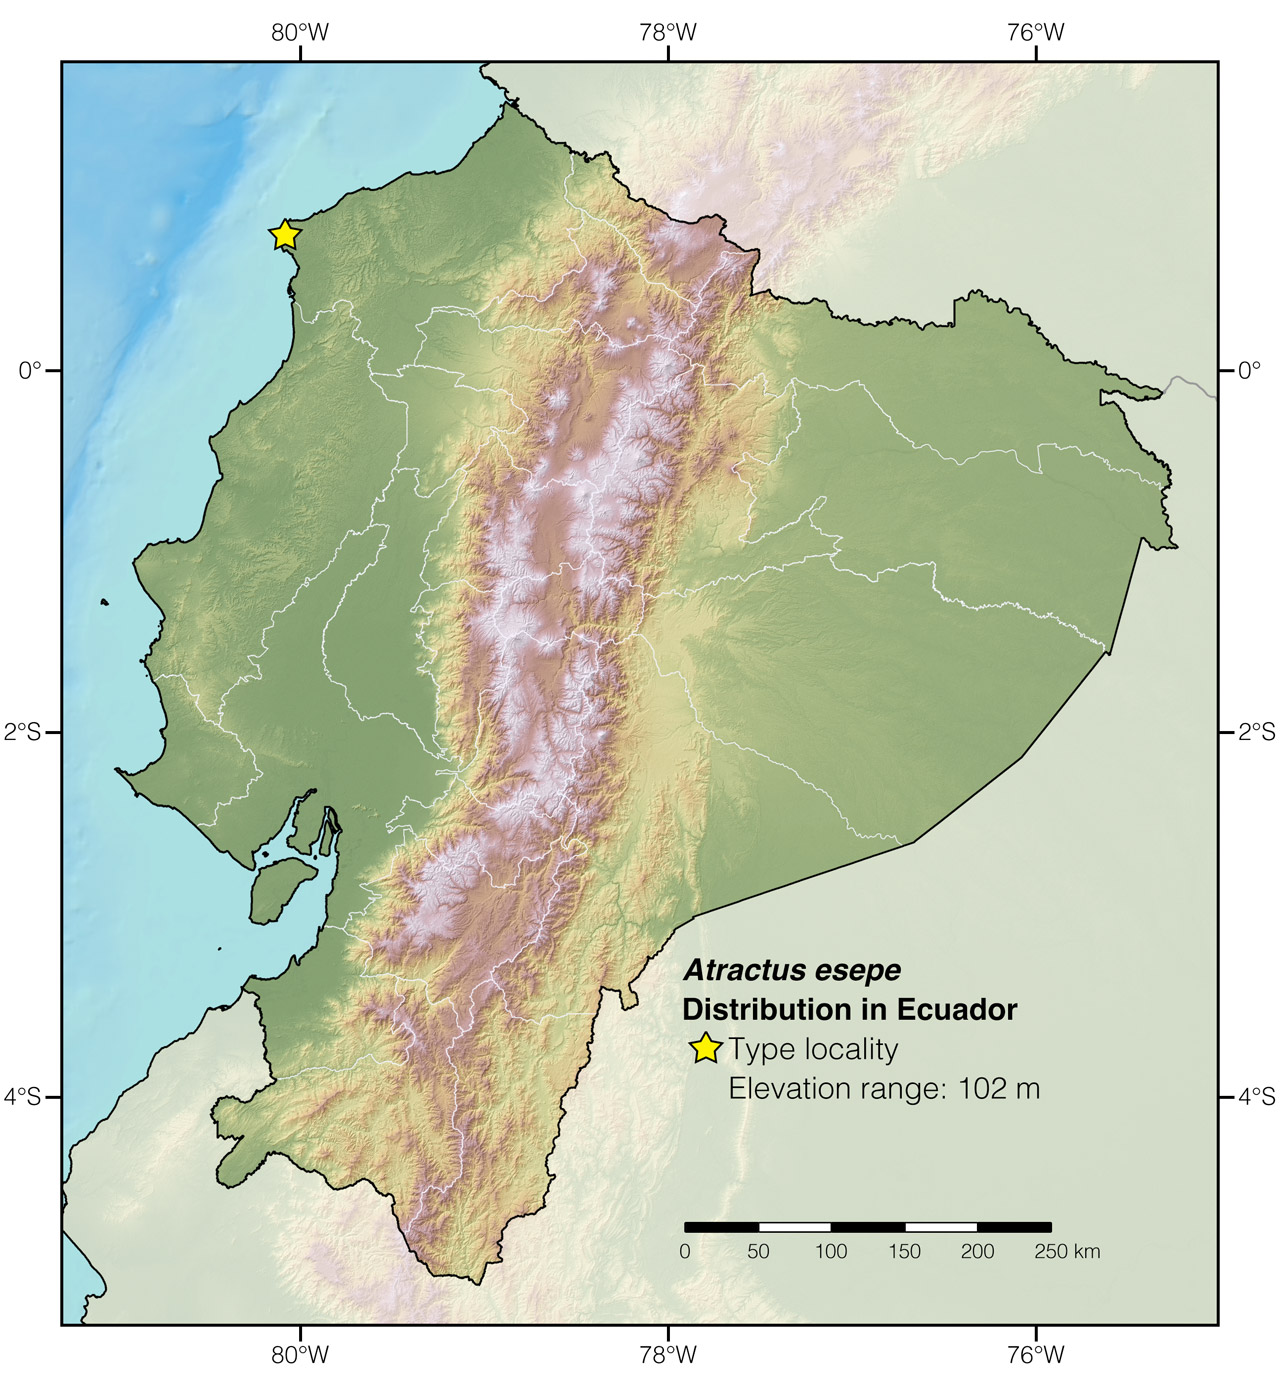 Distribution of Atractus esepe in Ecuador